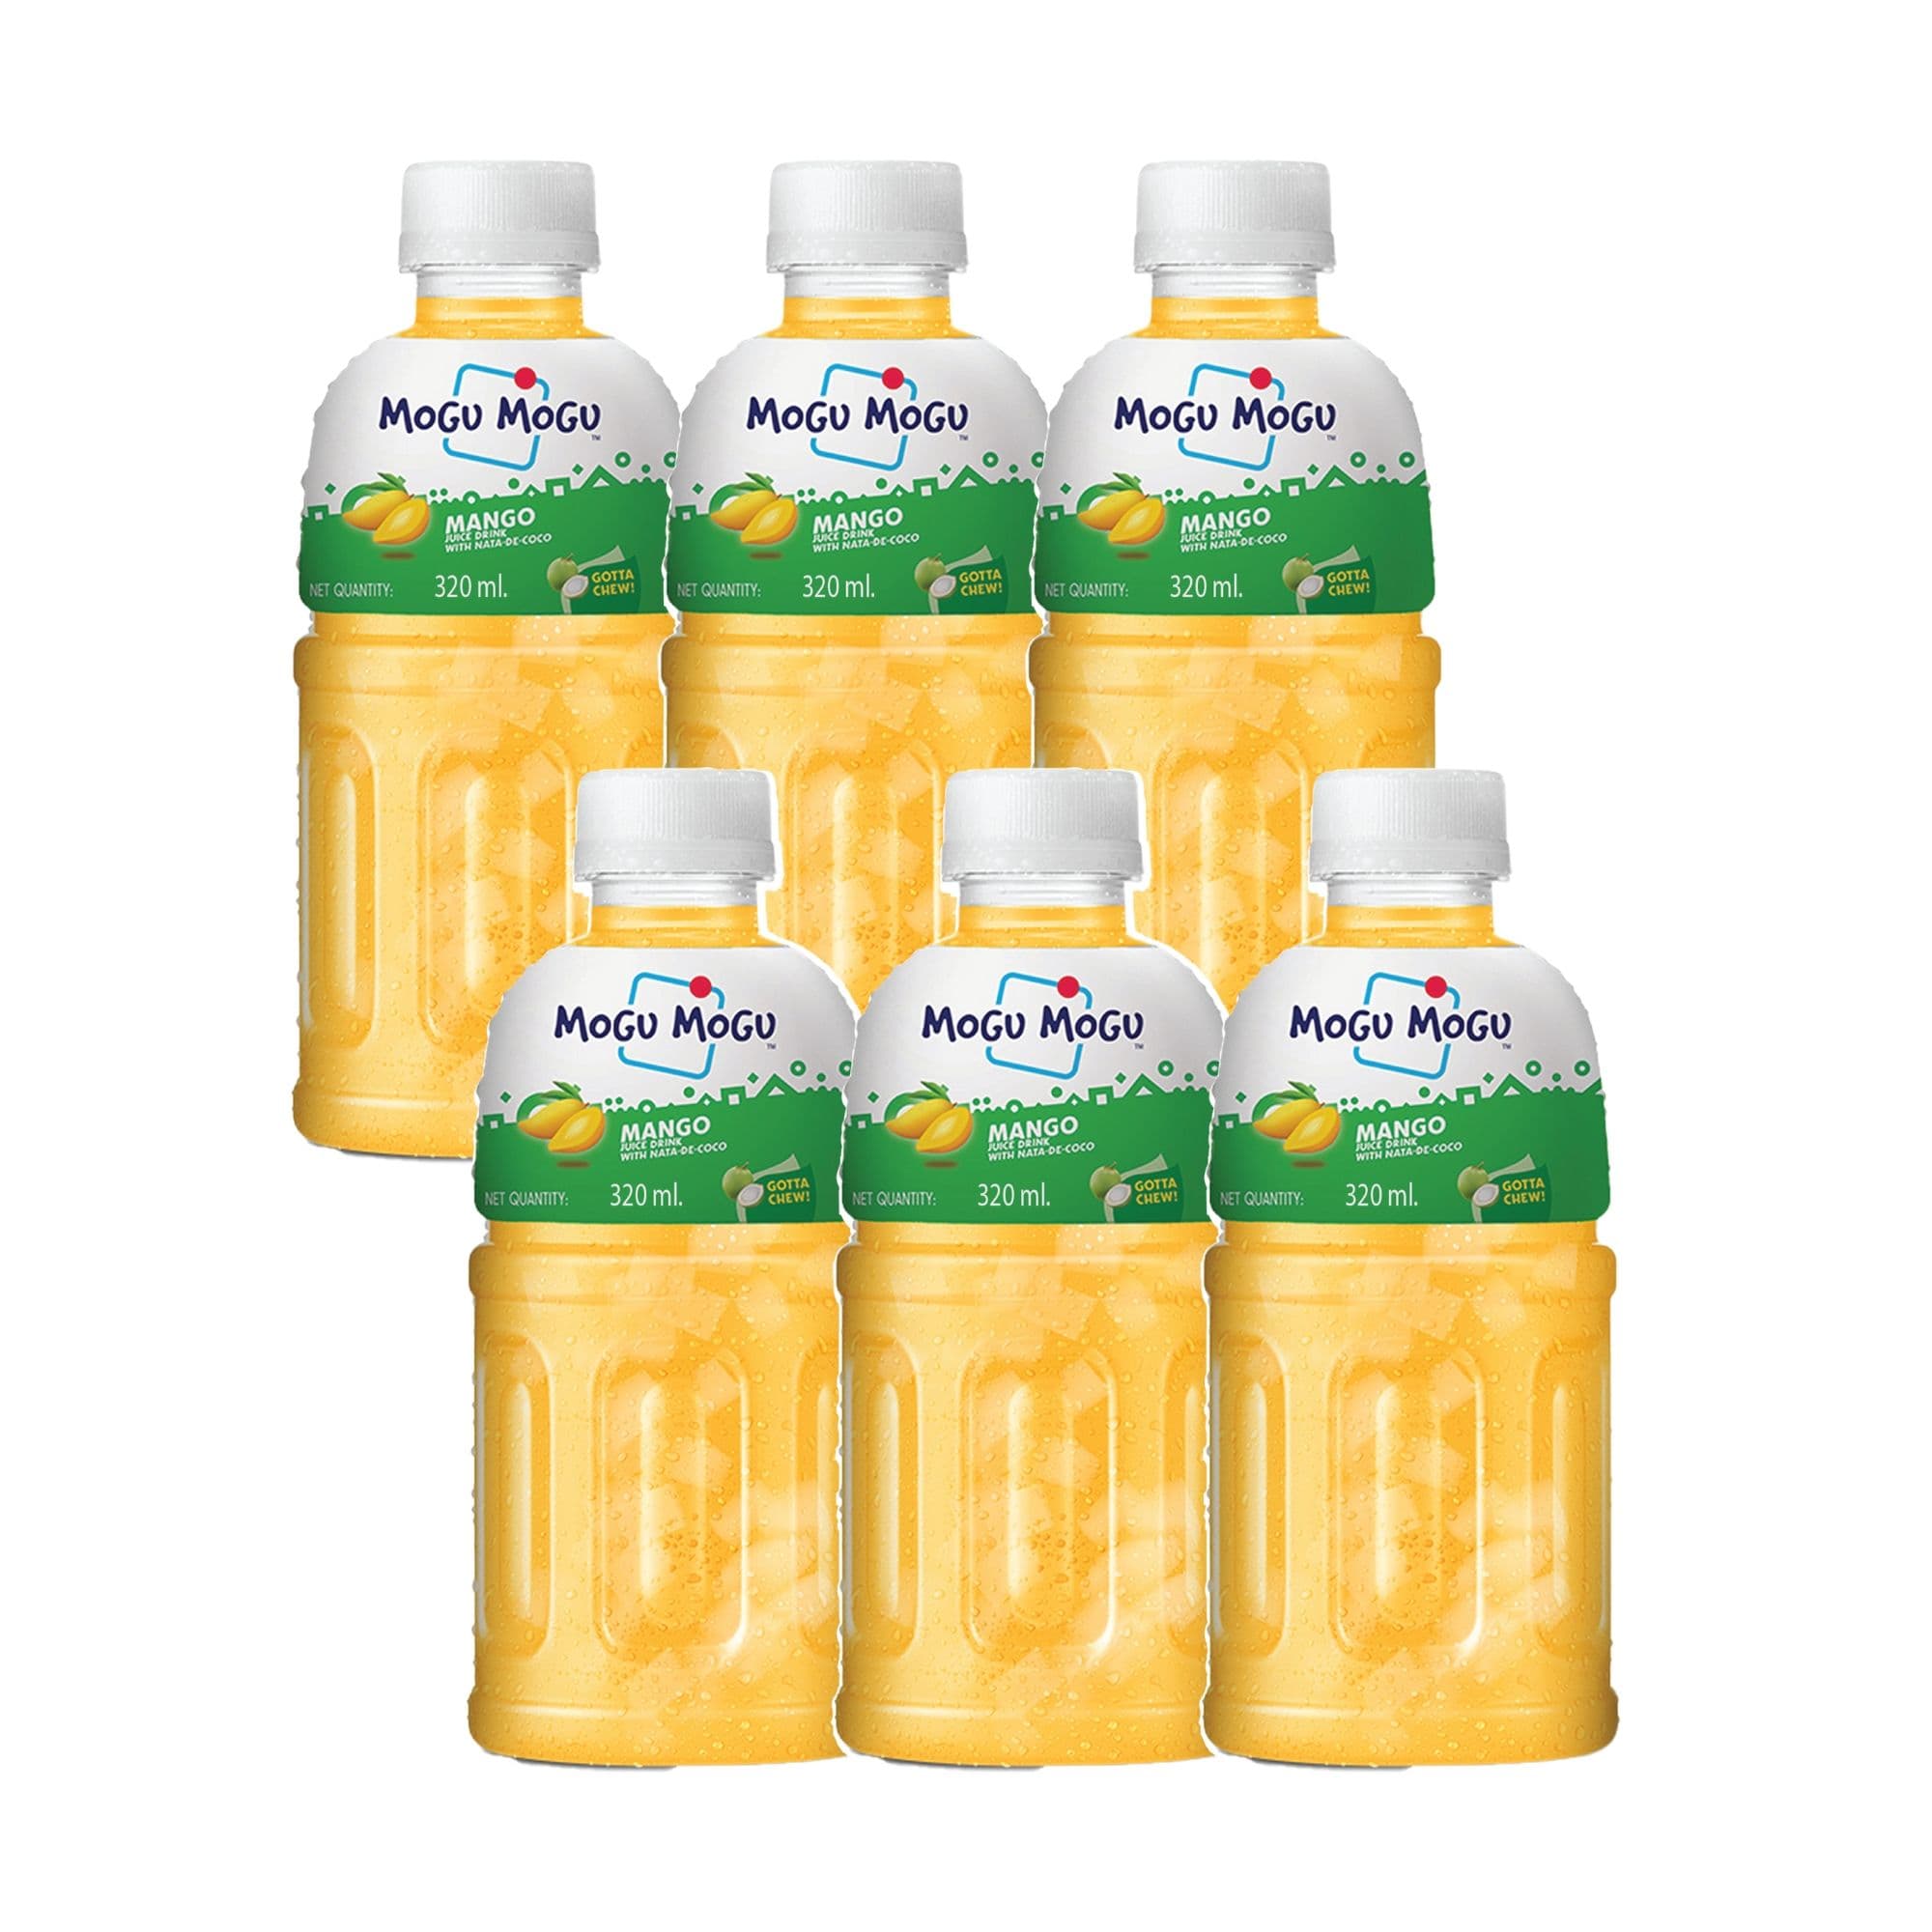 Mogu Mogu Mango Juice 25% with Nata De Coco 320ml (Pack of 6)